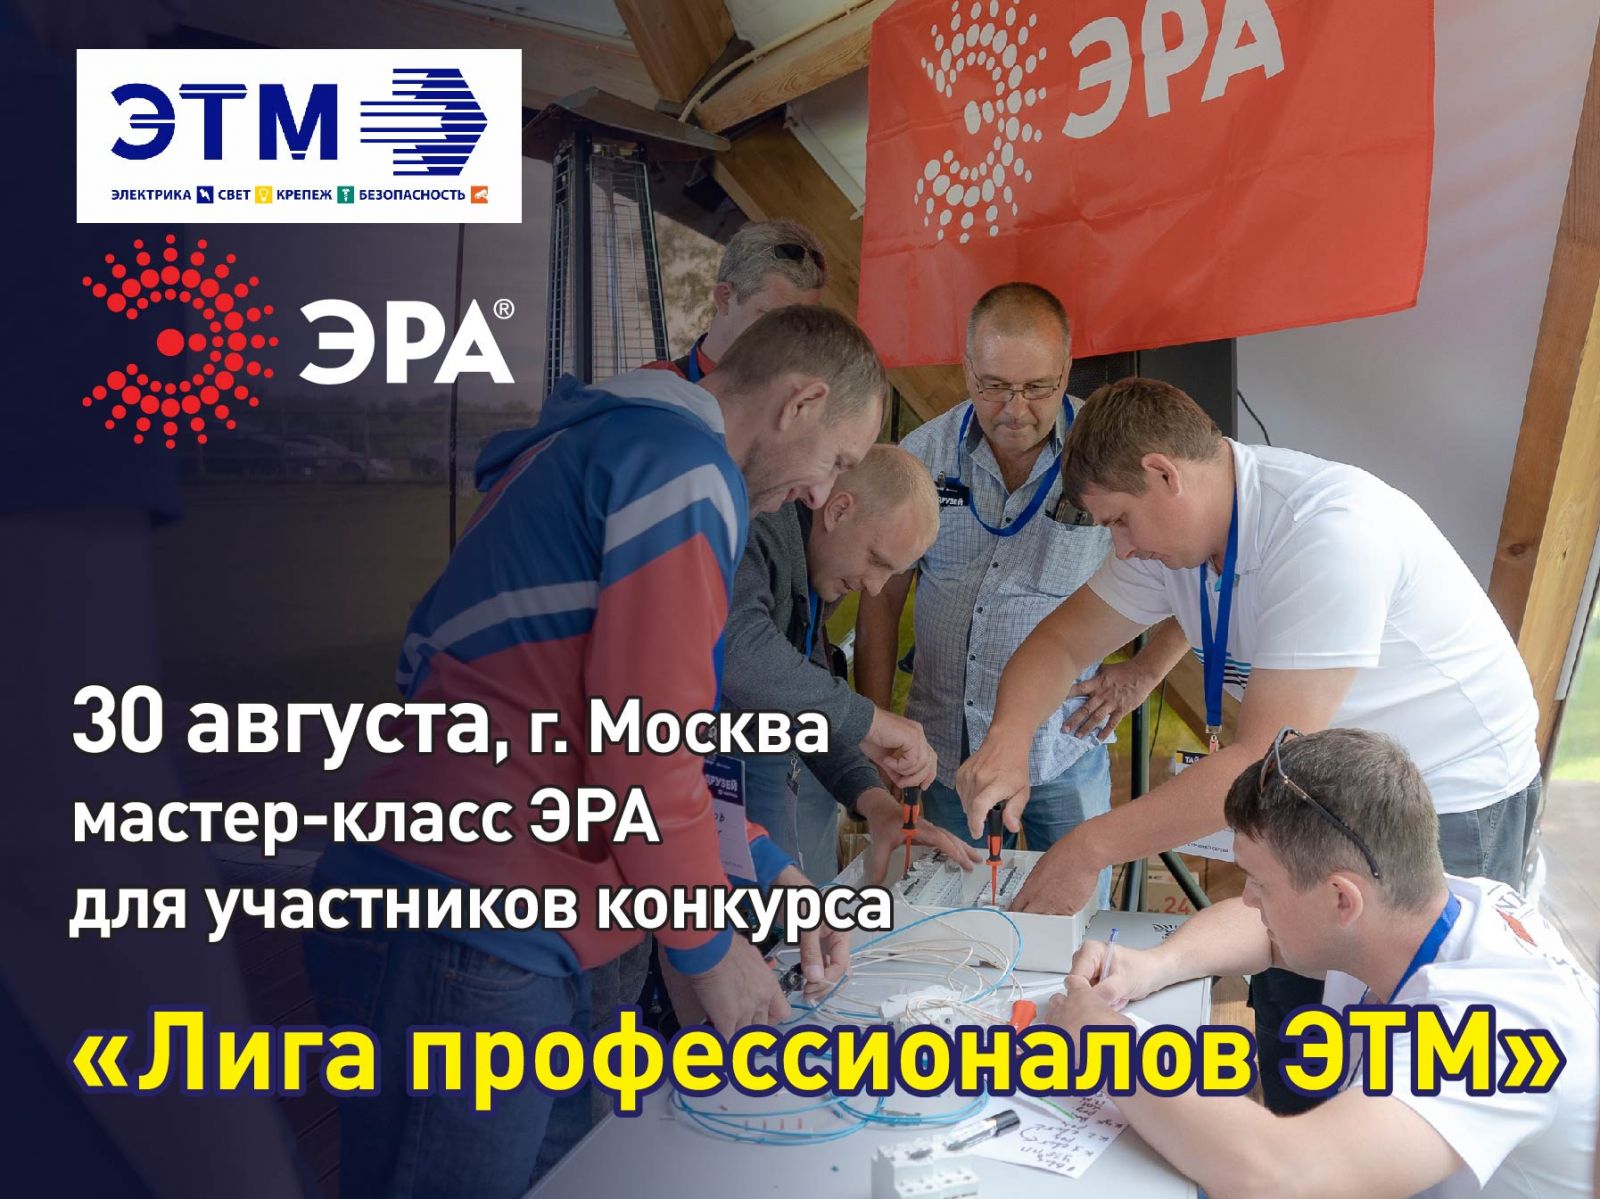 В Москве состоится мастер-класс ЭРА для участников конкурса "Лига профессионалов ЭТМ"